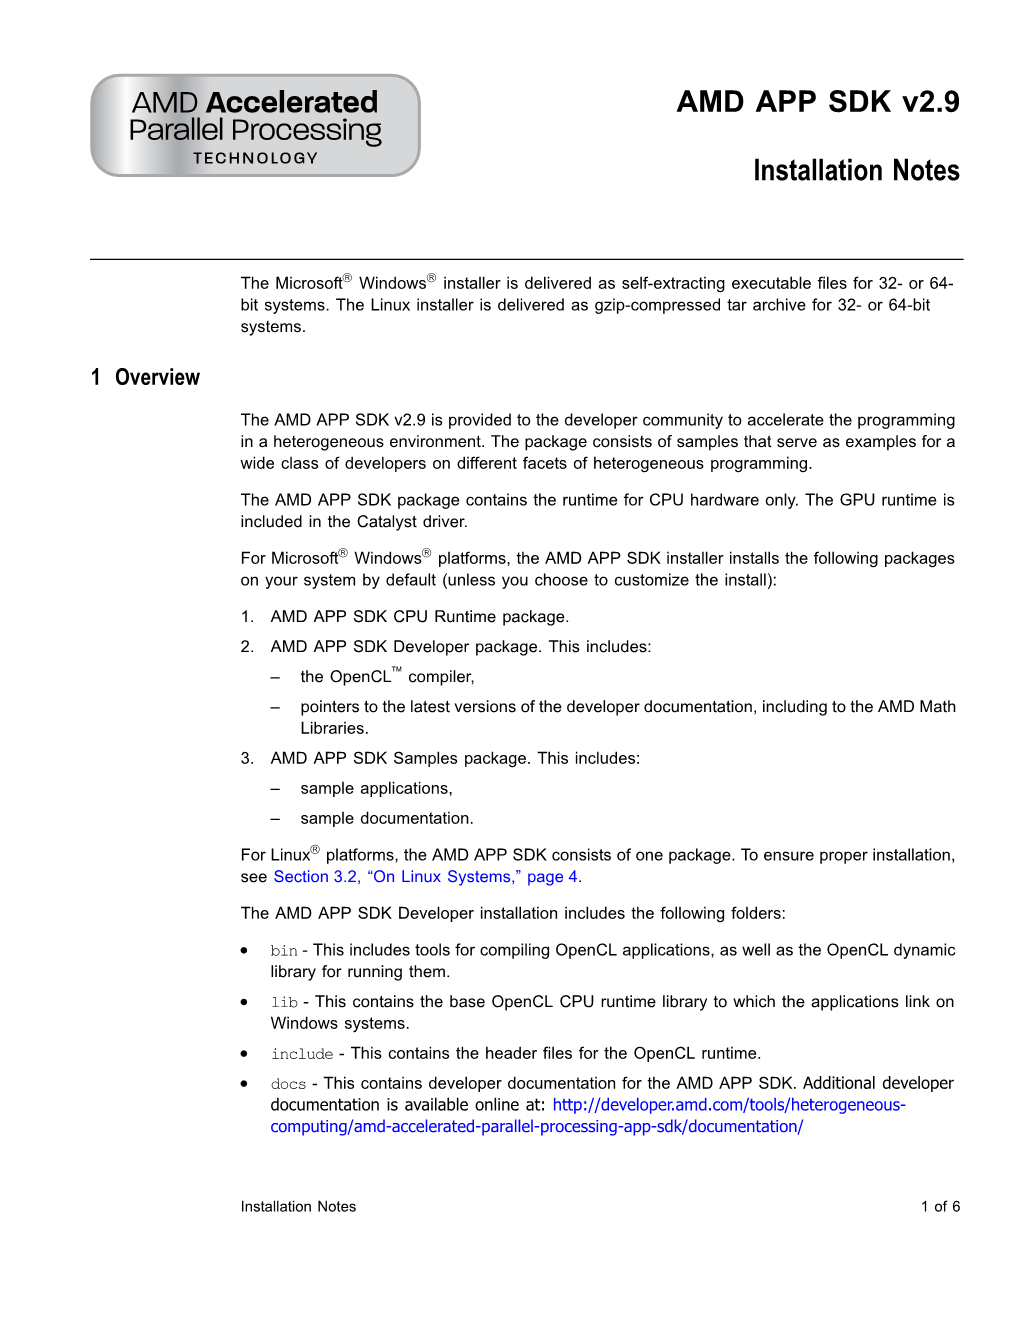 AMD APP SDK V2.9 Installation Notes